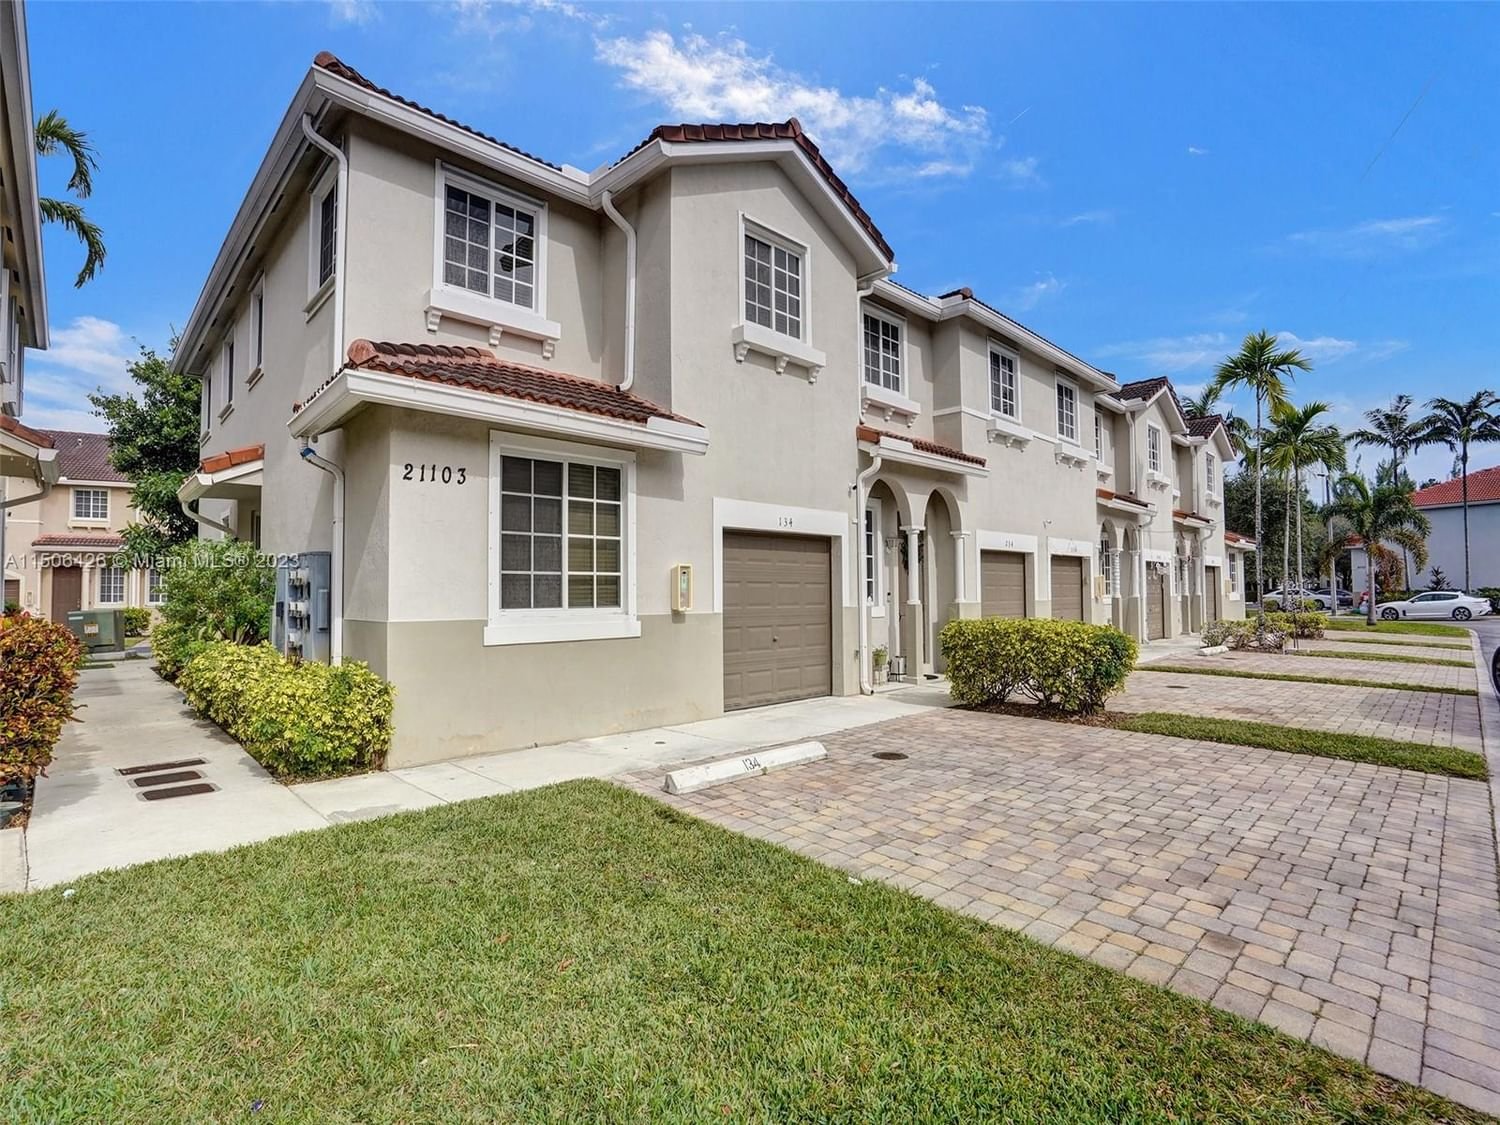 Real estate property located at 21103 14th Pl #134, Miami-Dade County, MAJORCA ISLES III CONDO, Miami, FL